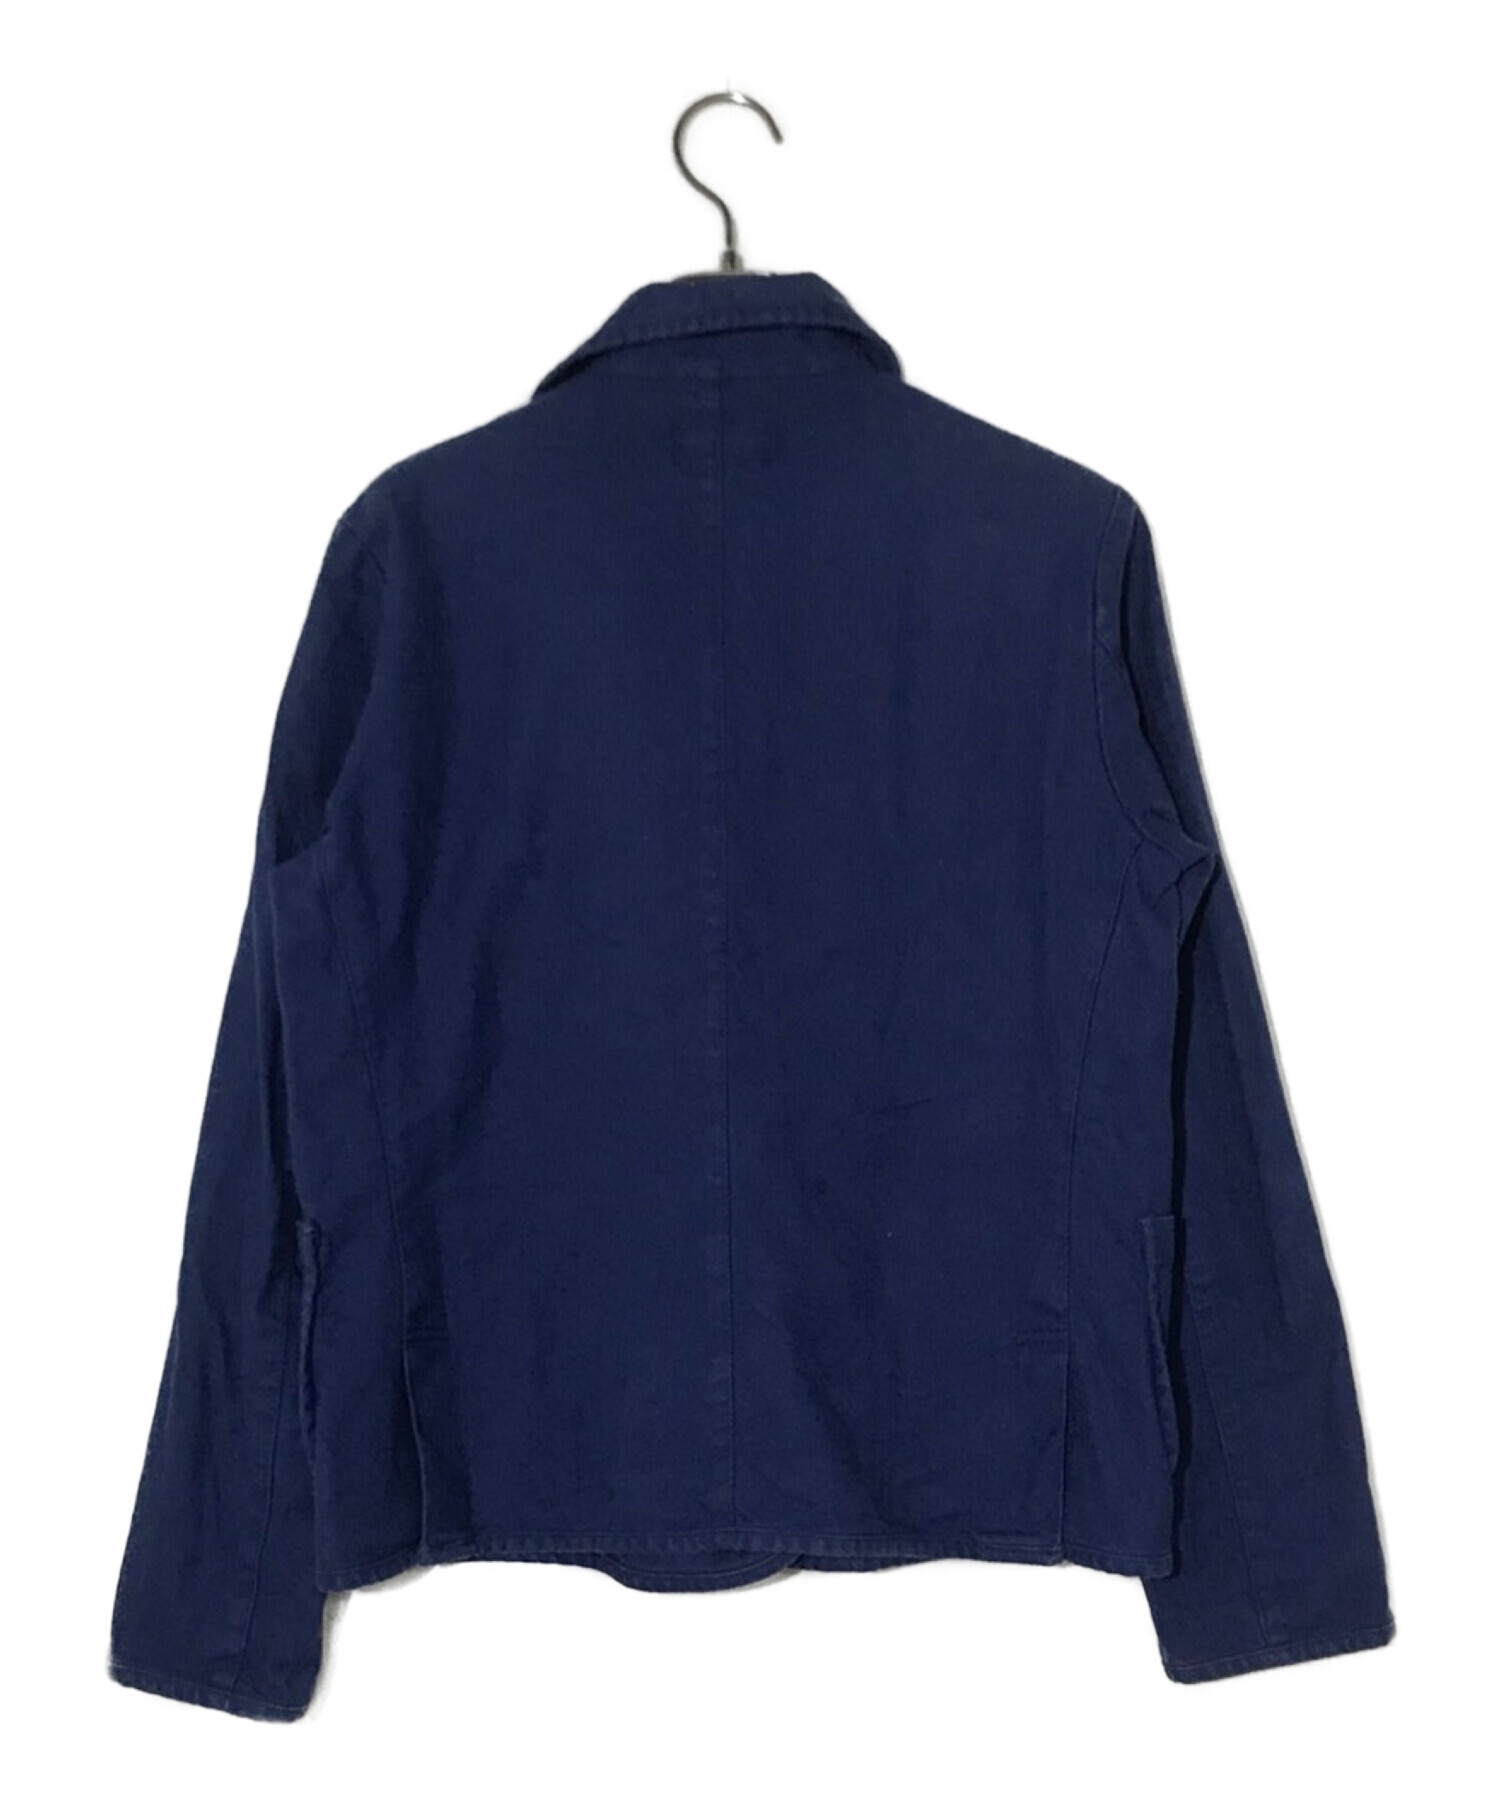 DANTON (ダントン) フランス製フレンチワークジャケット ブルー サイズ:36